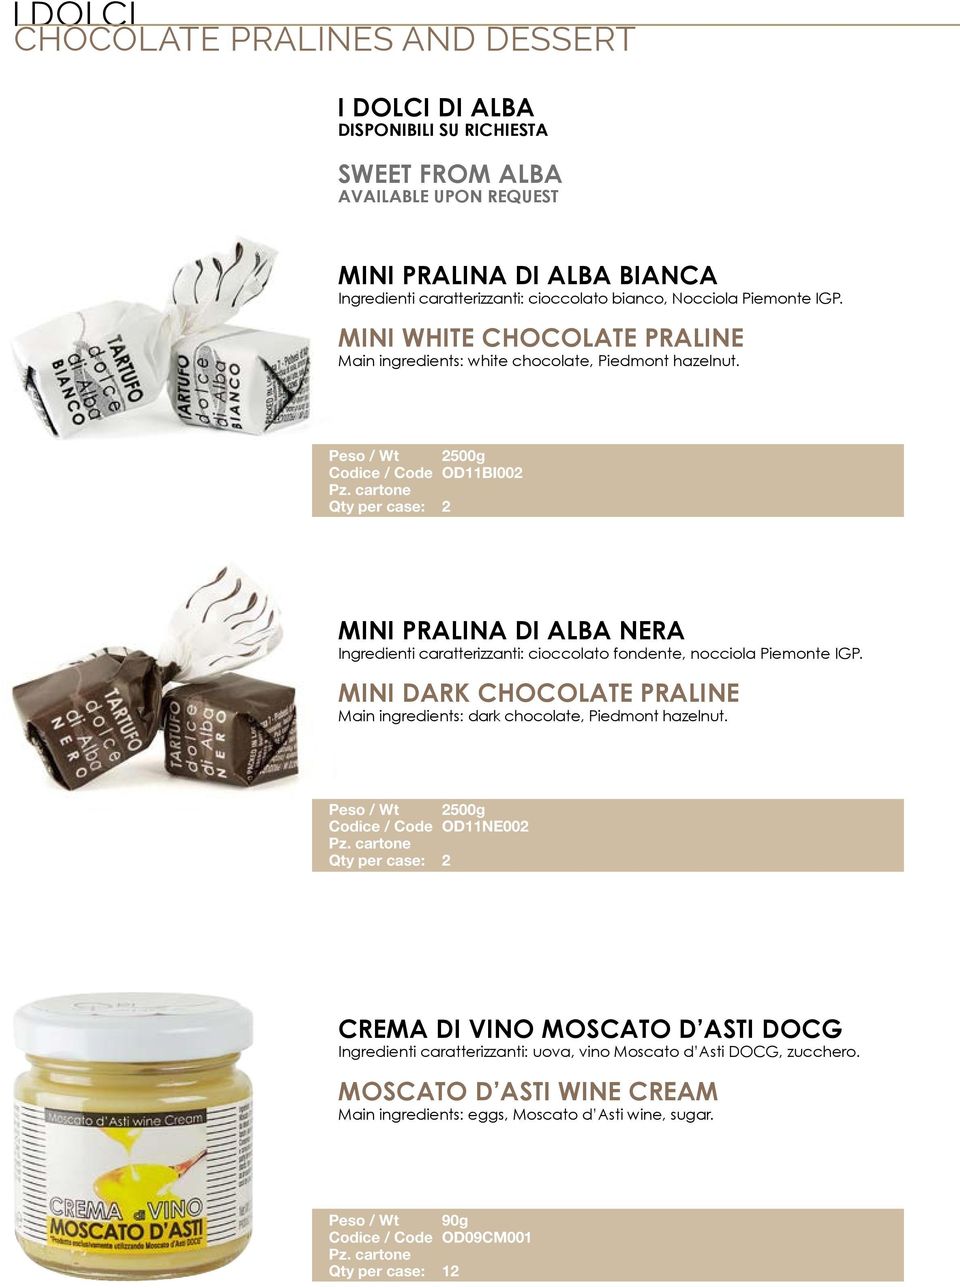 Peso / Wt 2500g Codice / Code OD11BI002 Qty per case: 2 MINI PRALINA DI ALBA NERA Ingredienti caratterizzanti: cioccolato fondente, nocciola Piemonte IGP.